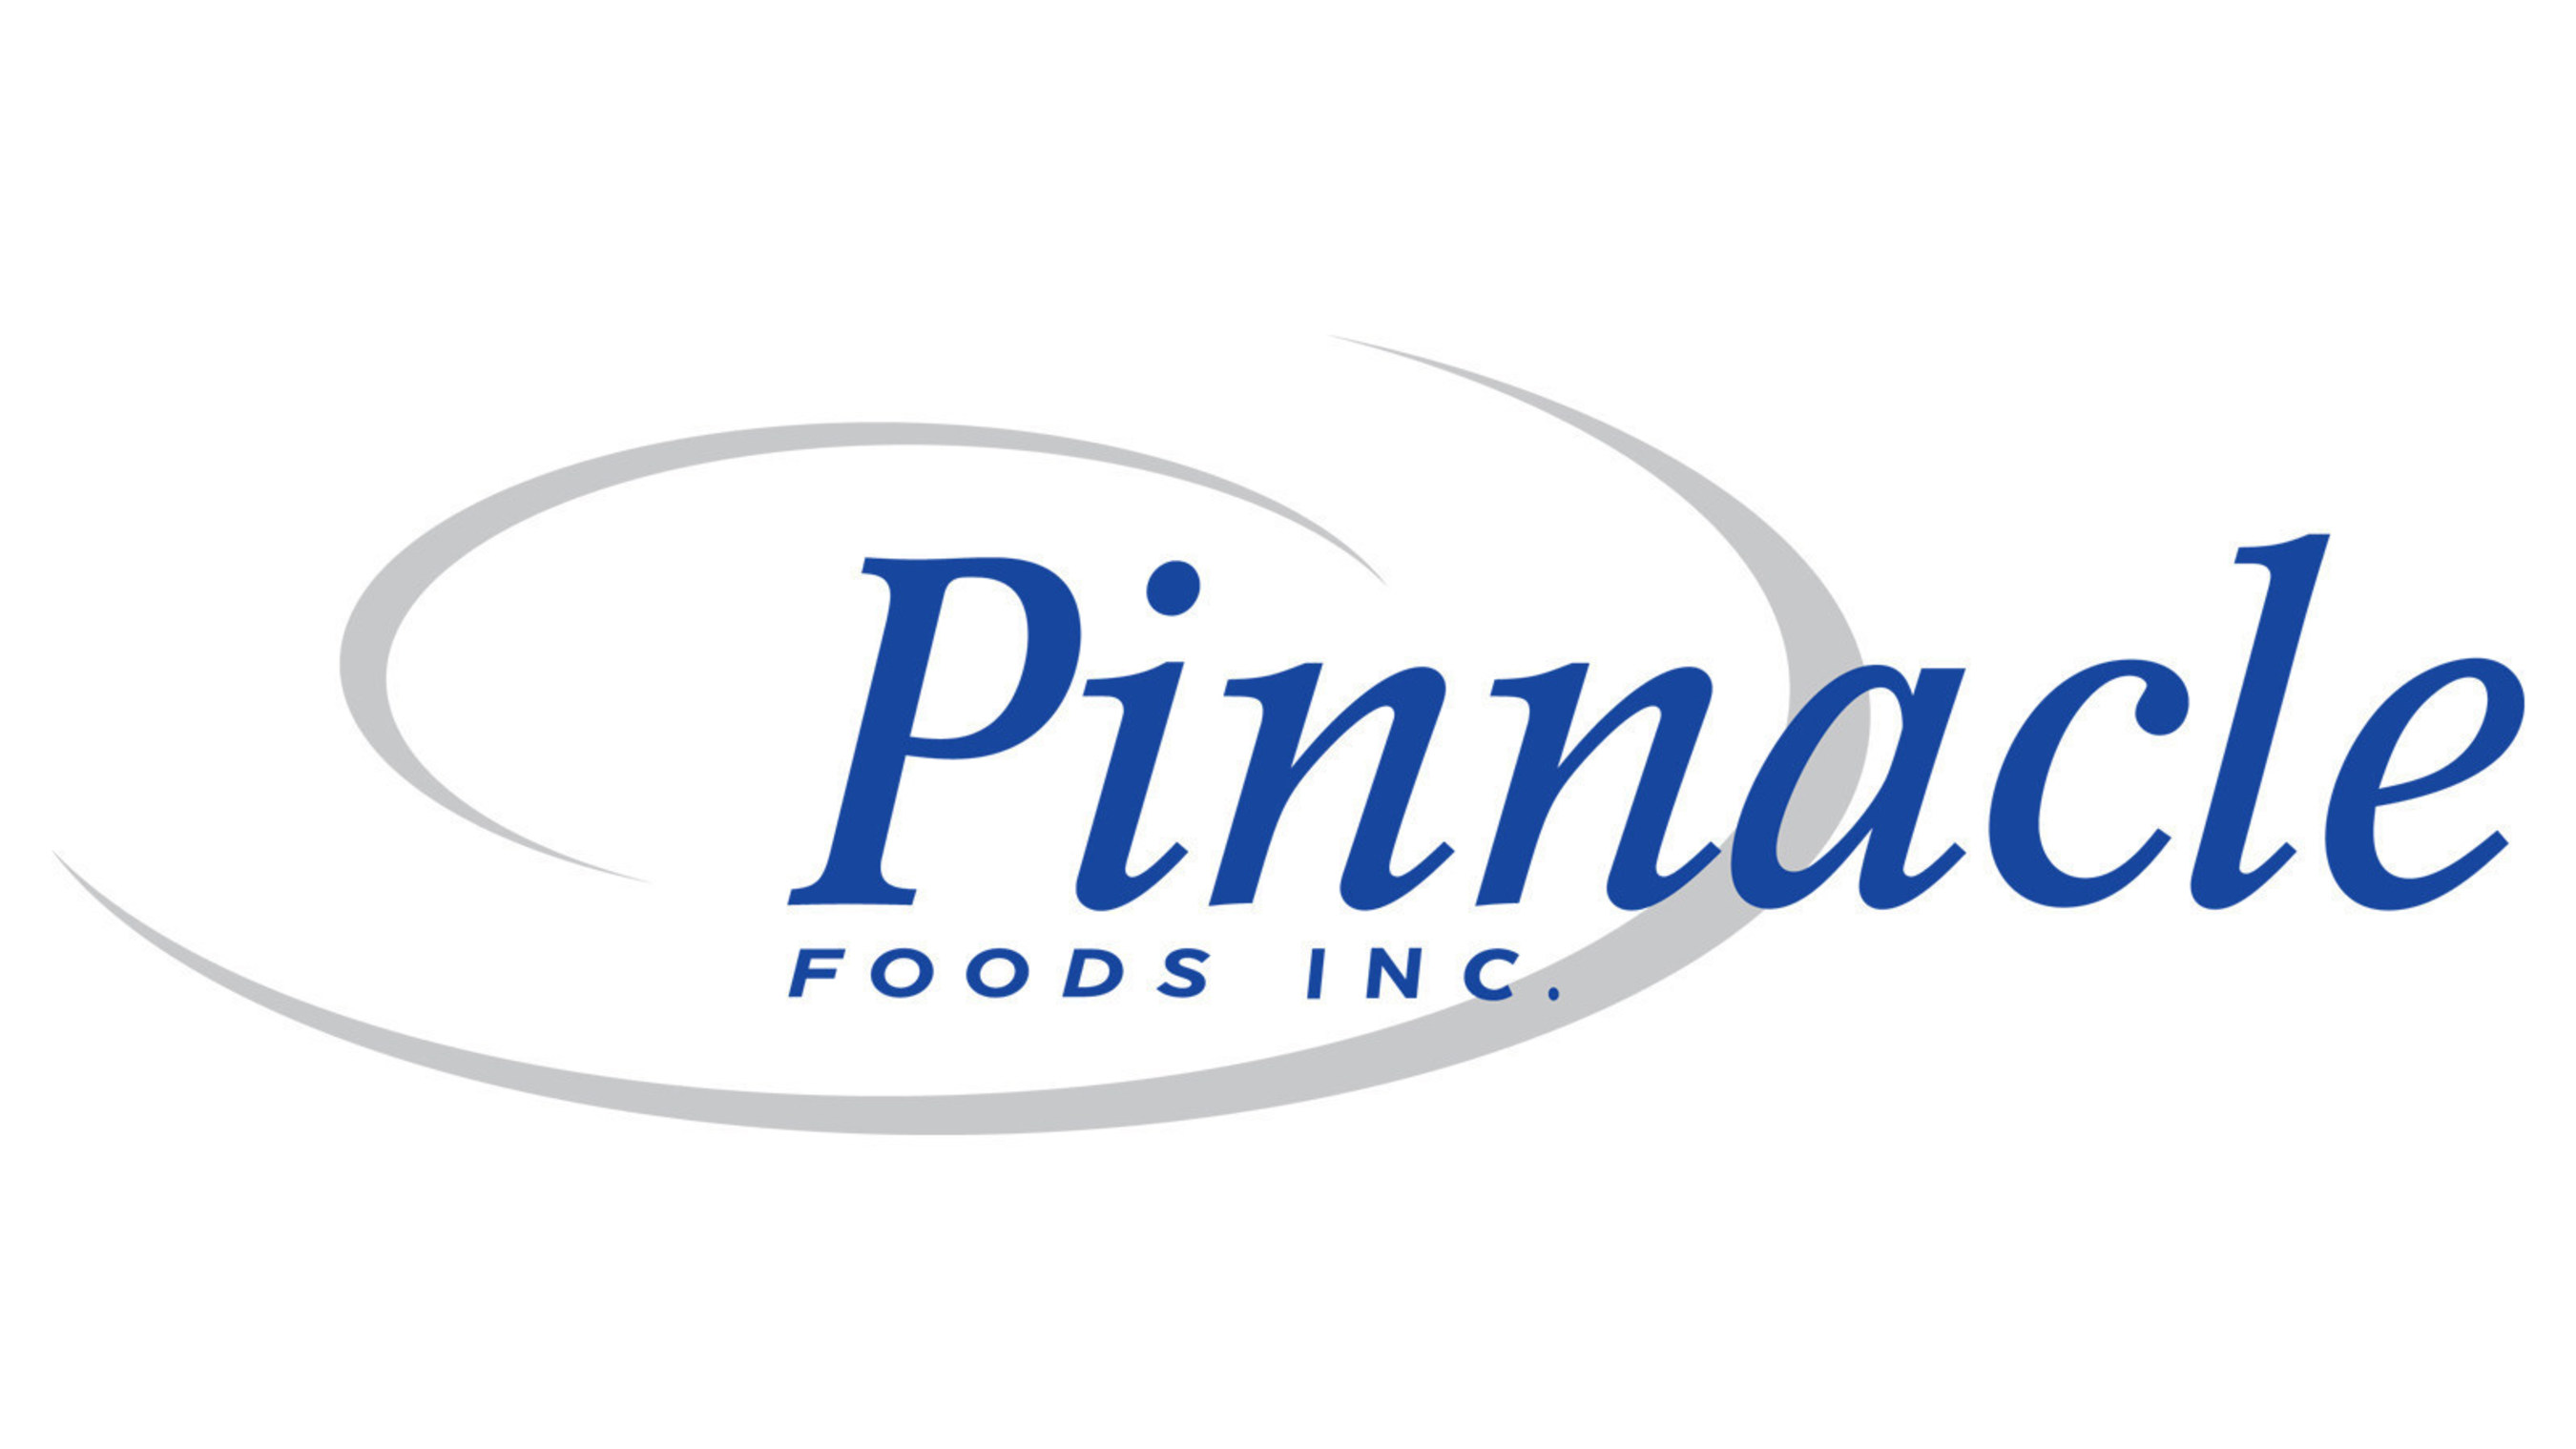 Pinnacle Foods Inc.